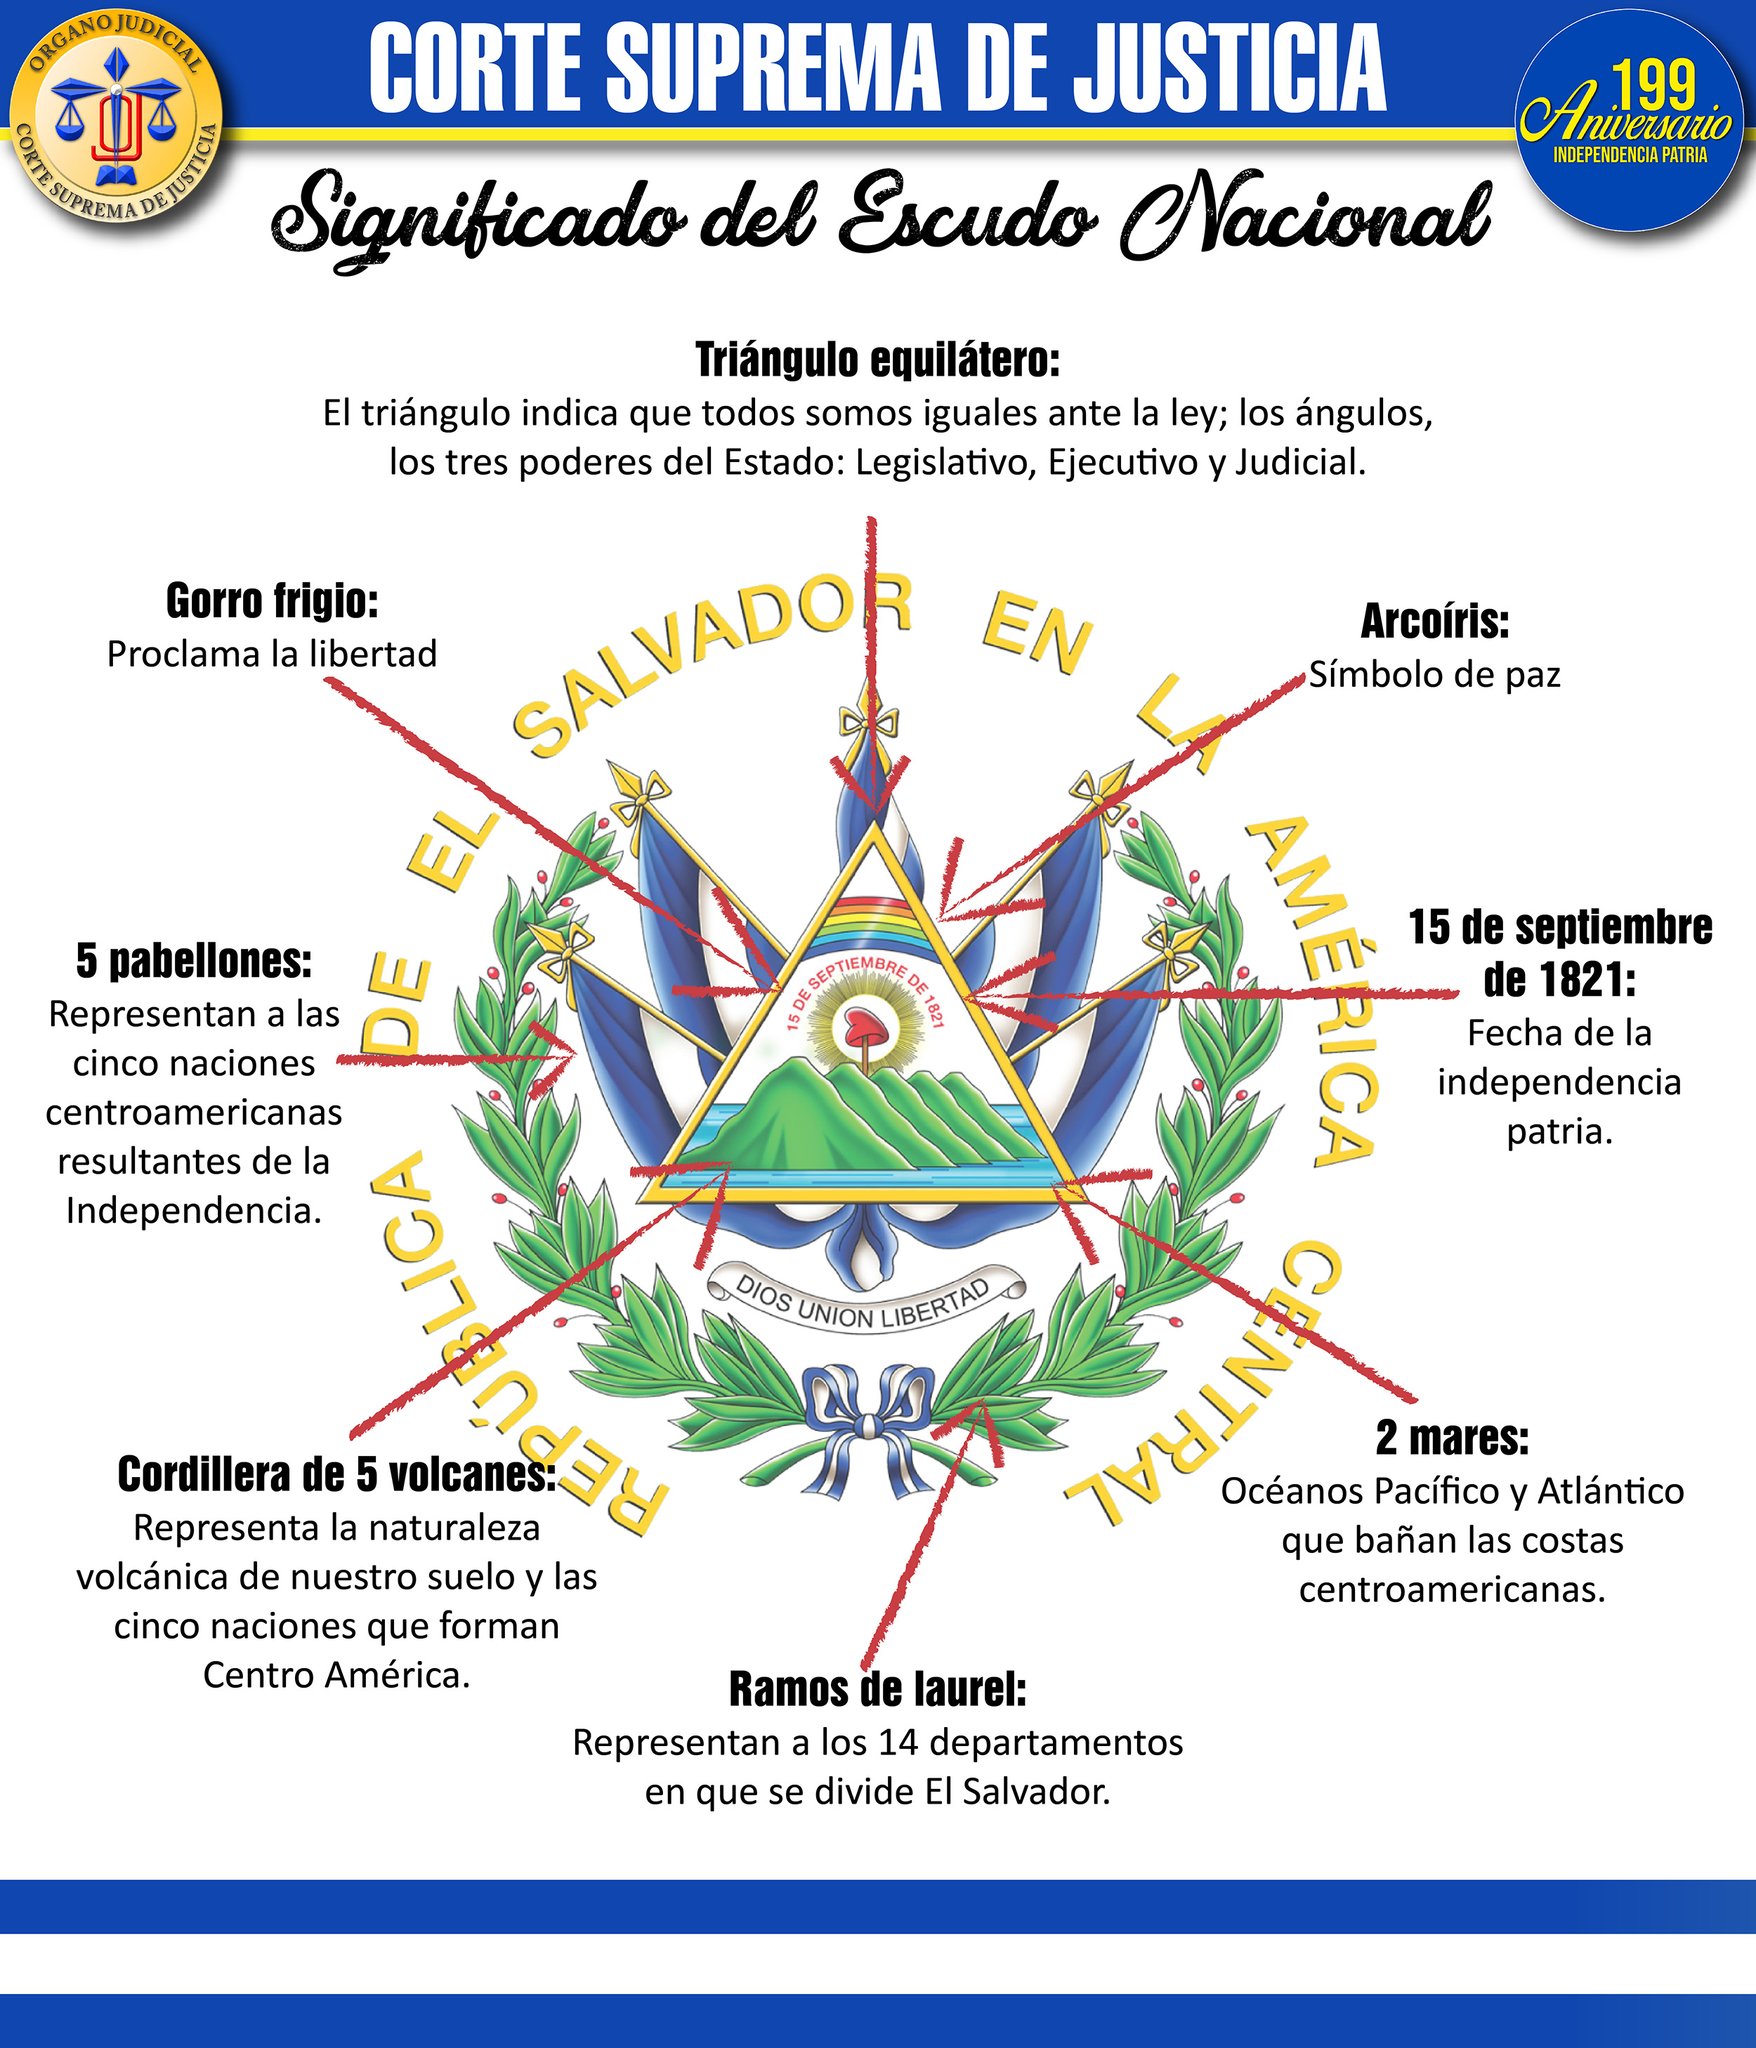 Corte Suprema de Justicia de El Salvador on Twitter:  "#EducaciónJudicialPopular El Escudo Nacional de El Salvador… "